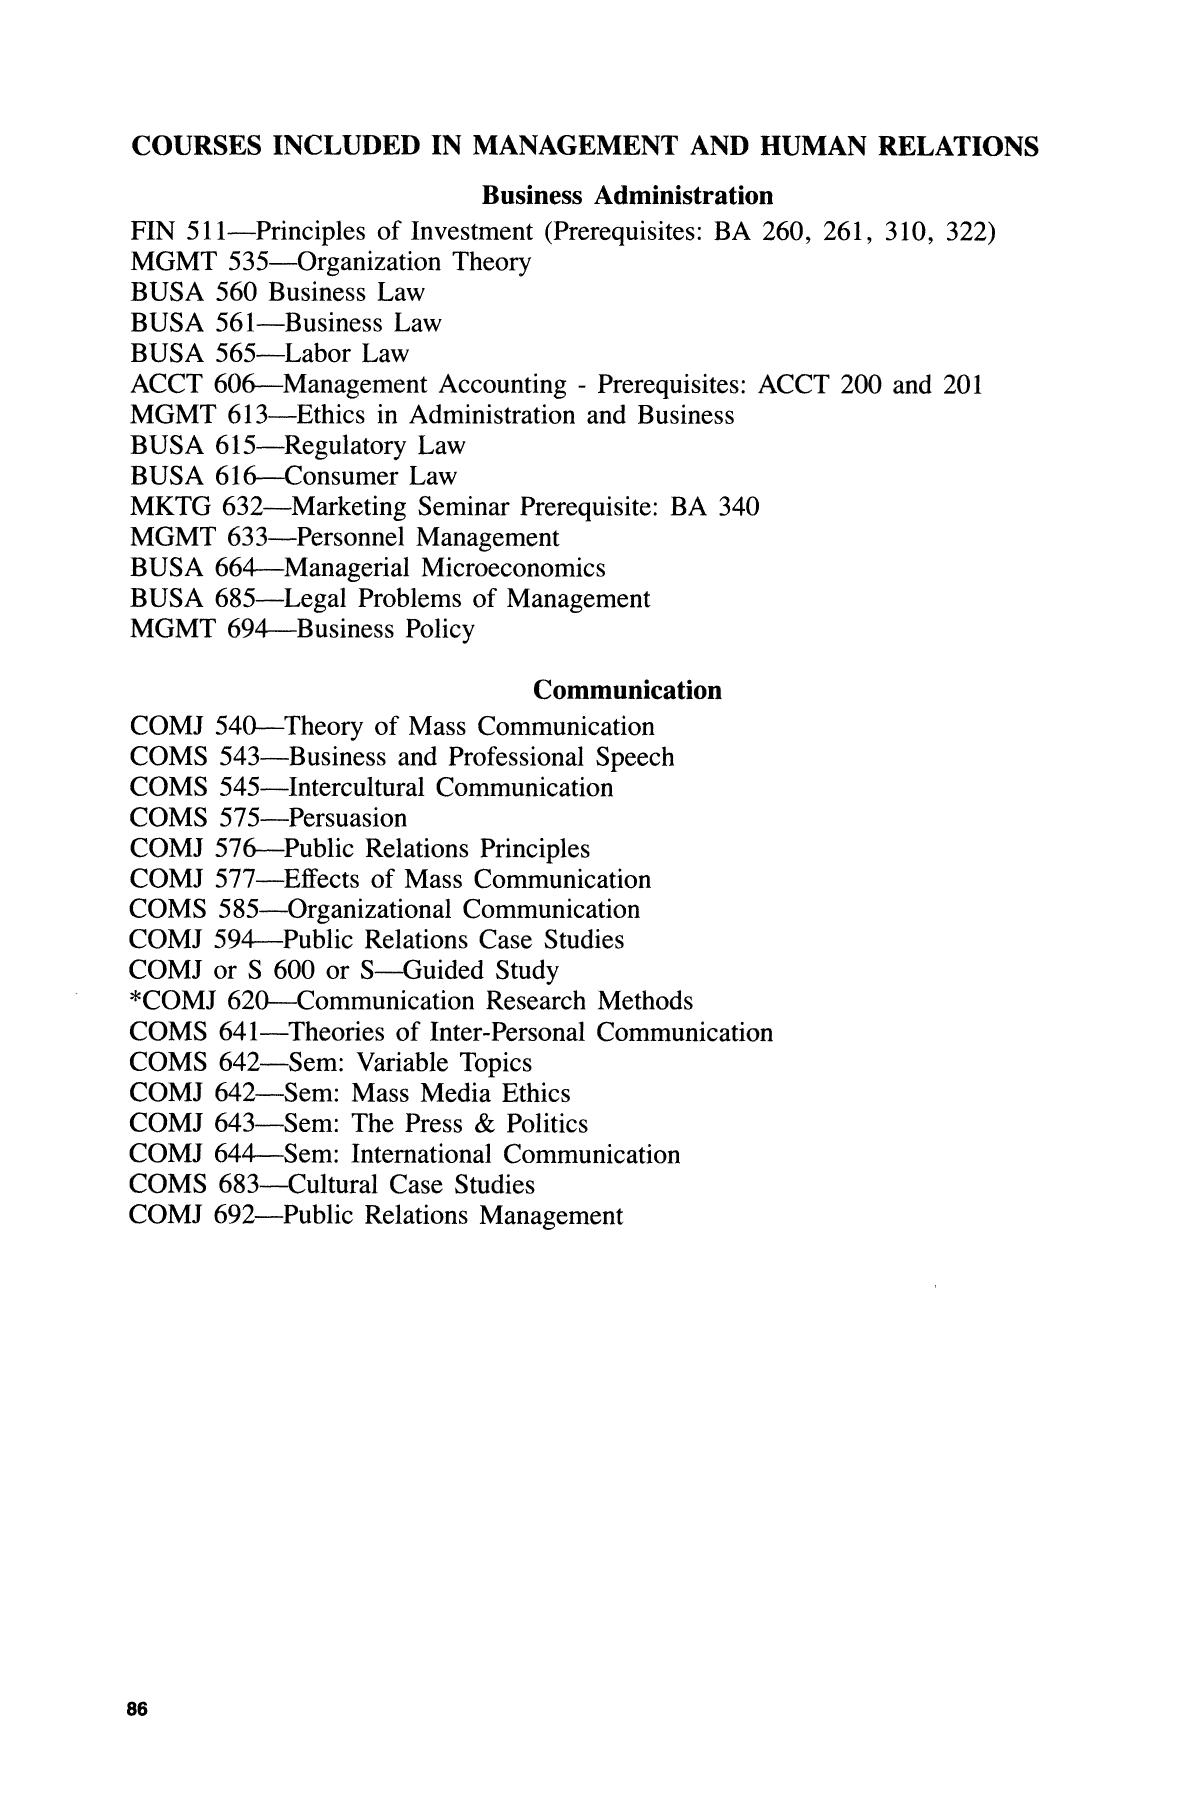 Catalog of Abilene Christian University, 1985-1987
                                                
                                                    86
                                                